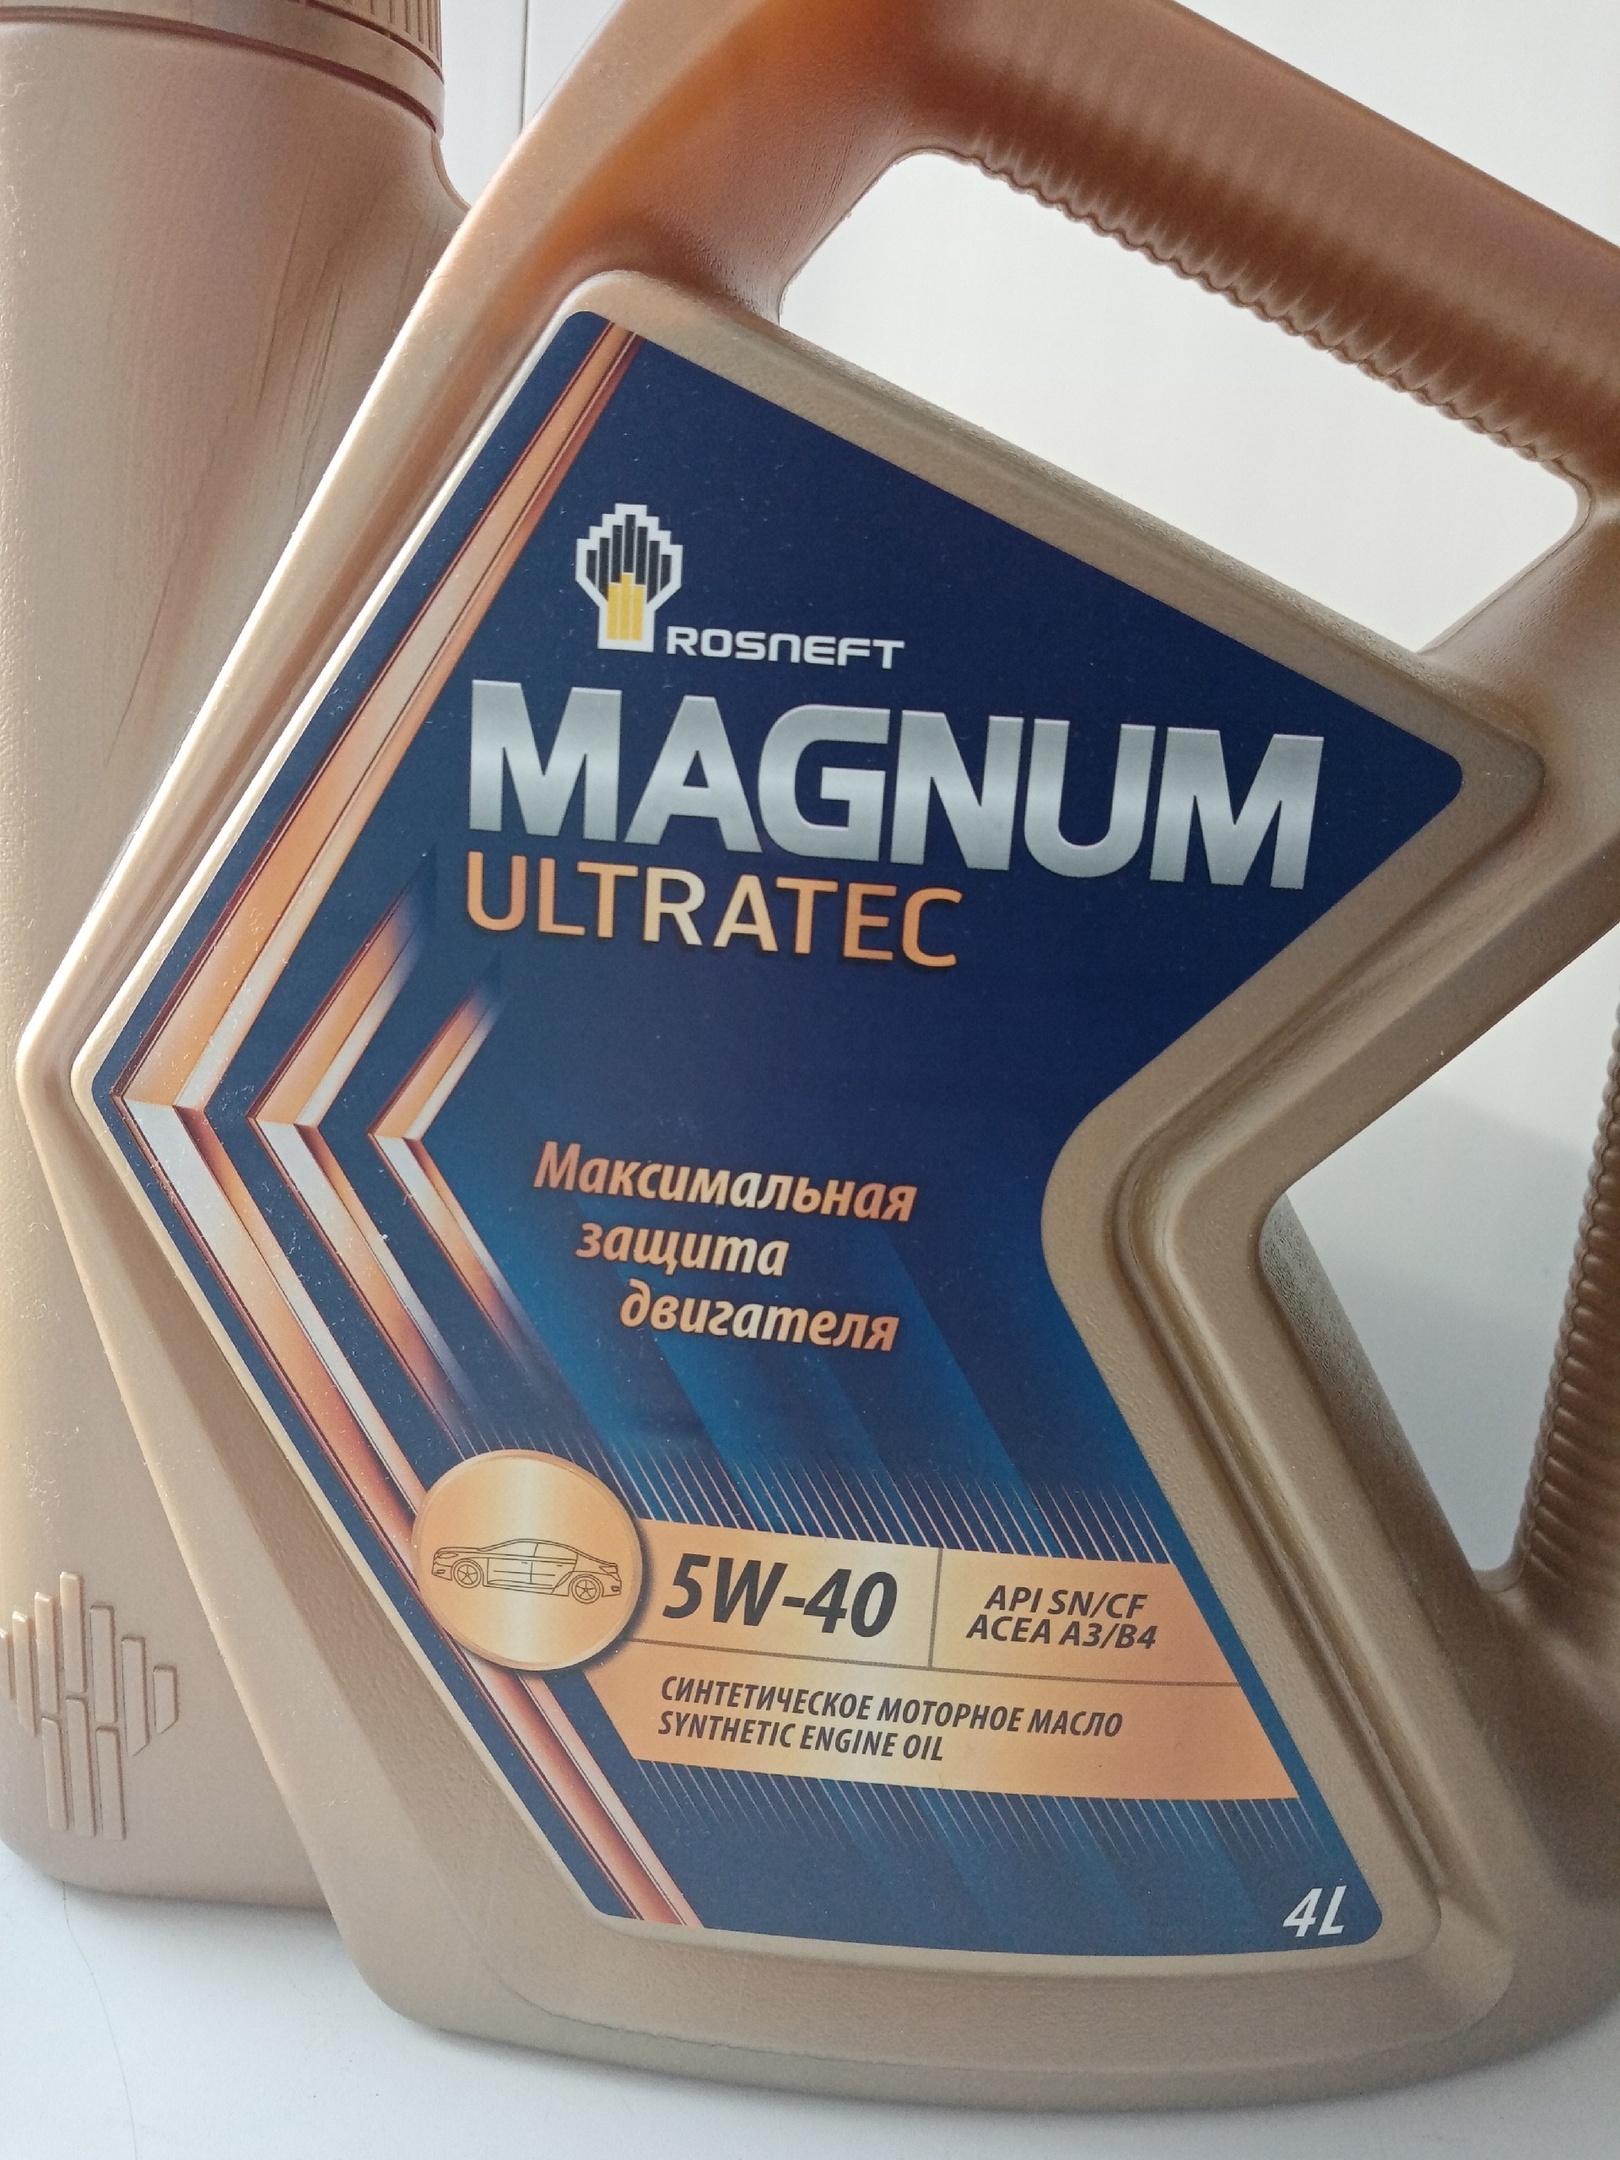 Какое масло магнум. Упаковка моторного масла Magnum Ultratec. Масло Роснефть 5w40 полусинтетика. Rosneft Magnum Ultratec 10w-40. Масло Магнум Медиум.